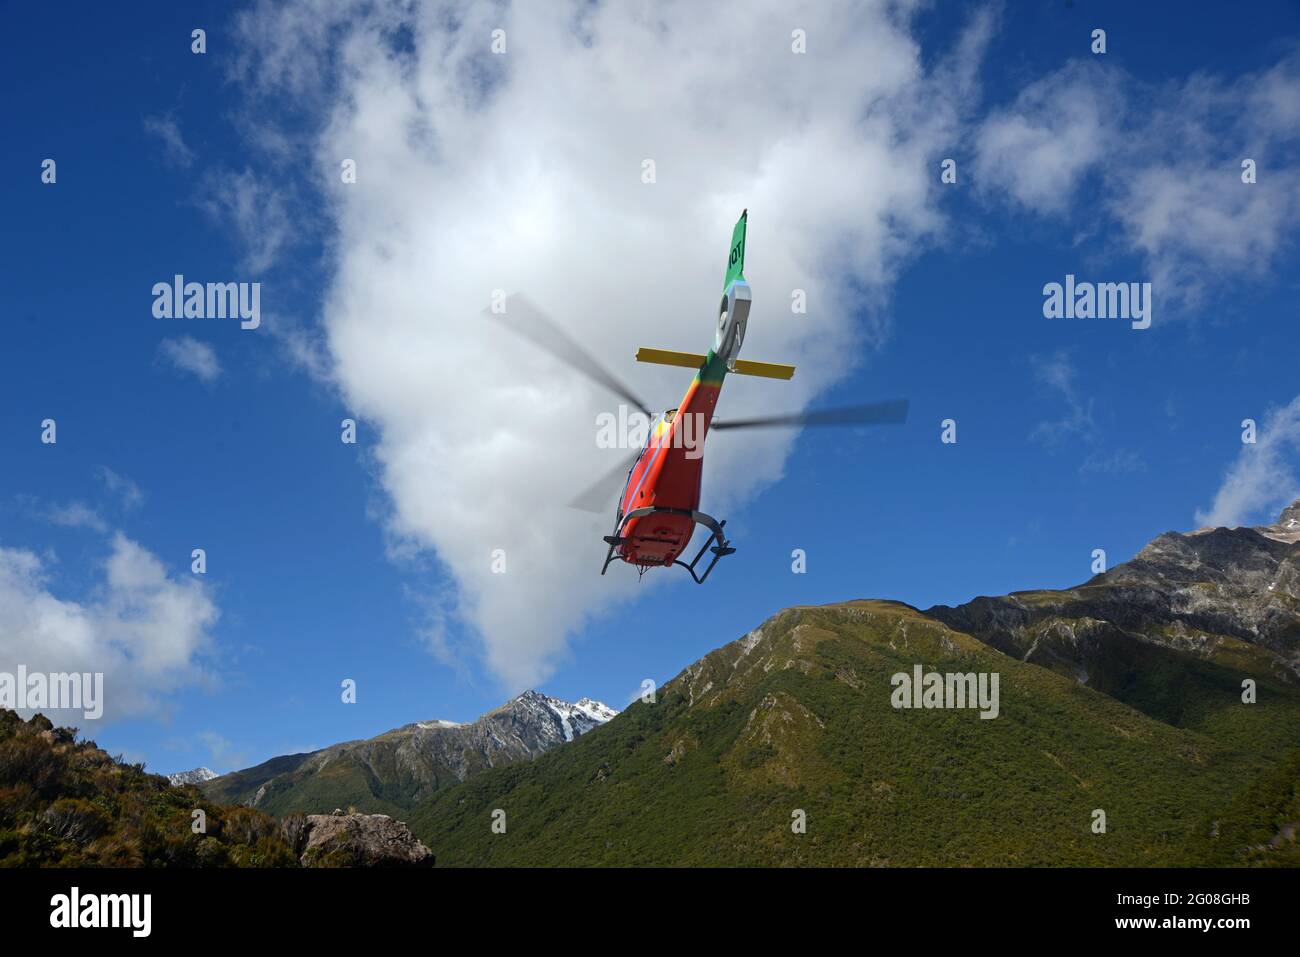 ARTHURS PASS, NEUSEELAND, 2021-01-29: Ein bunt bemalter Hubschrauber hebt von einem Parkplatz im Arthur's Pass National Park, Neuseeland, ab Stockfoto